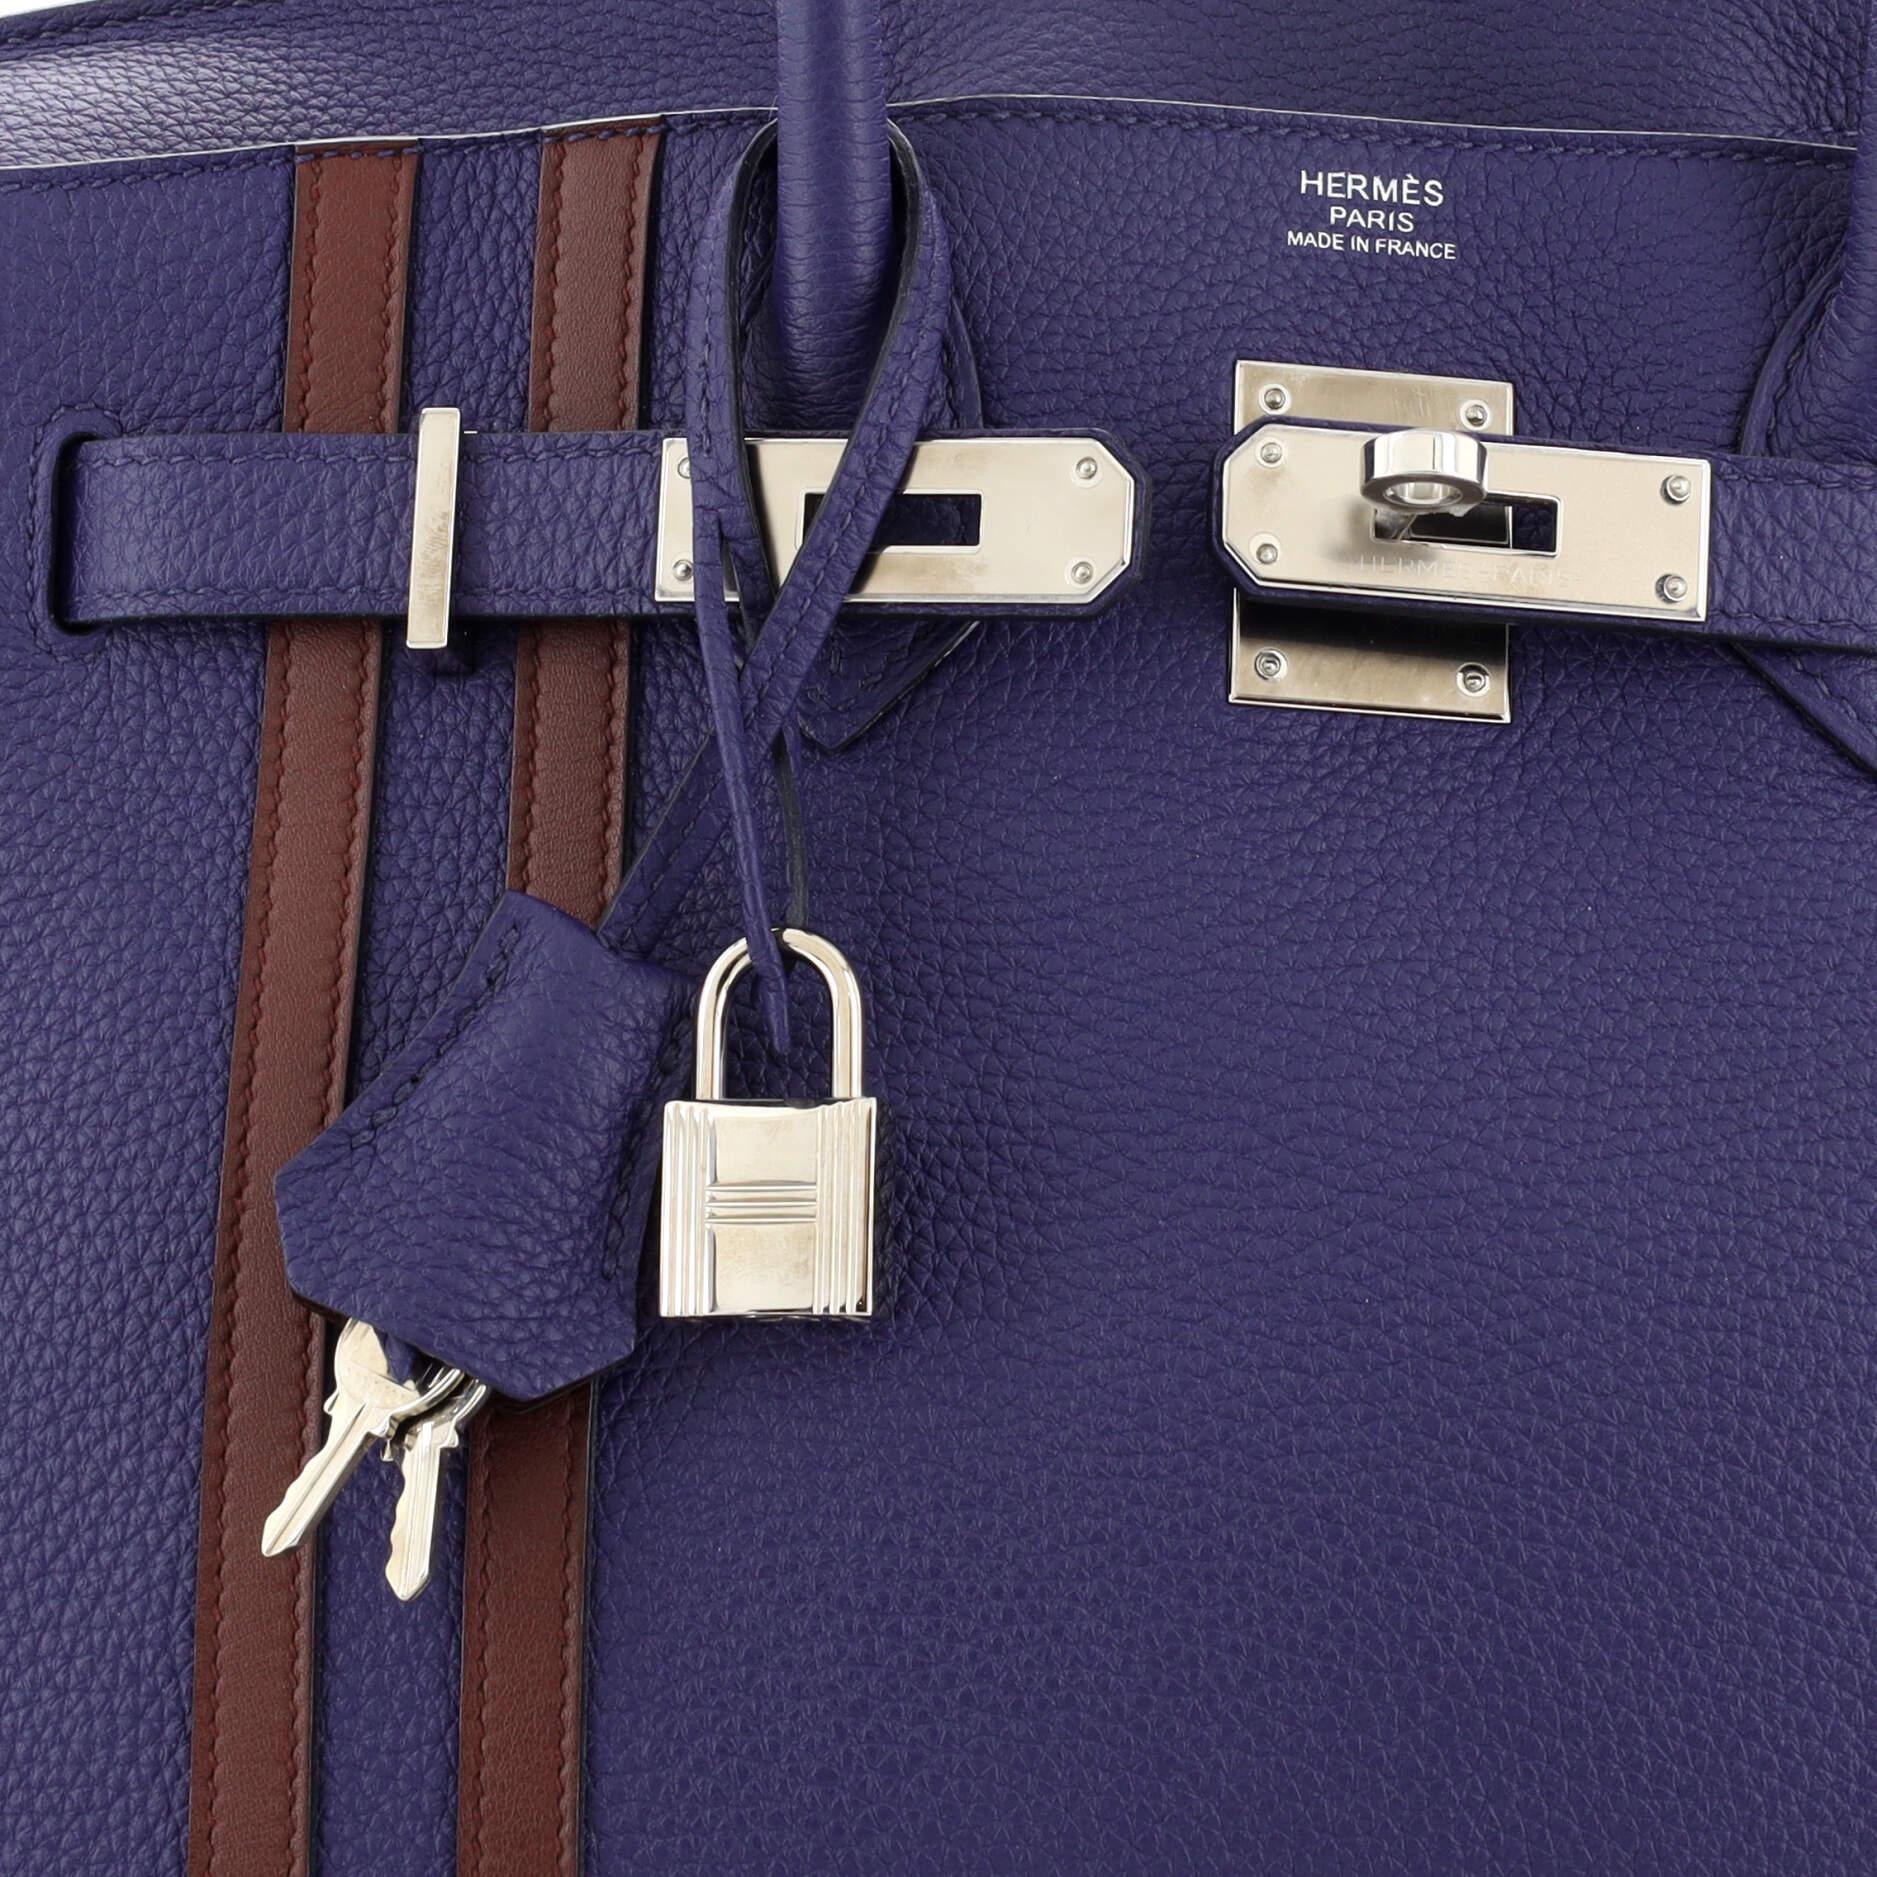 Hermes Officier Birkin Bag Limited Edition Togo with Swift 30 3